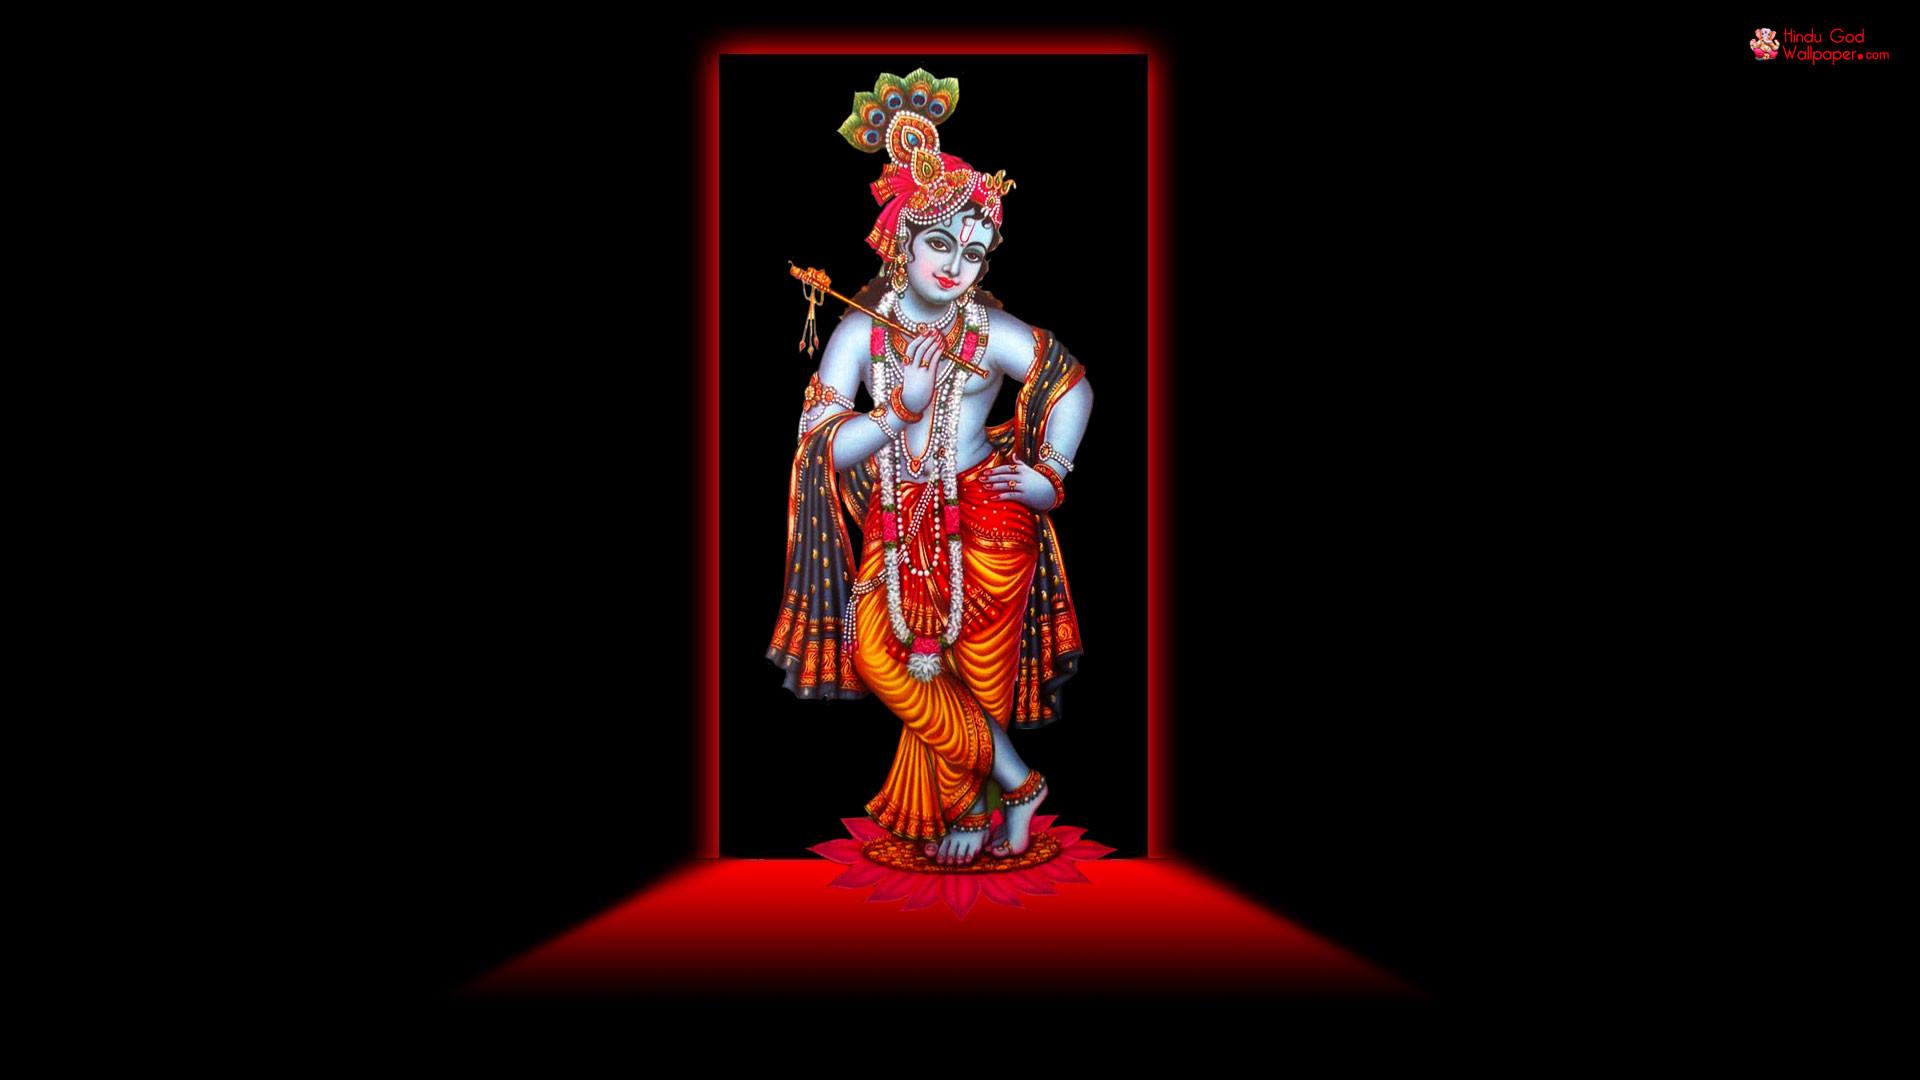 Hindu God HD Wallpaper 1080p